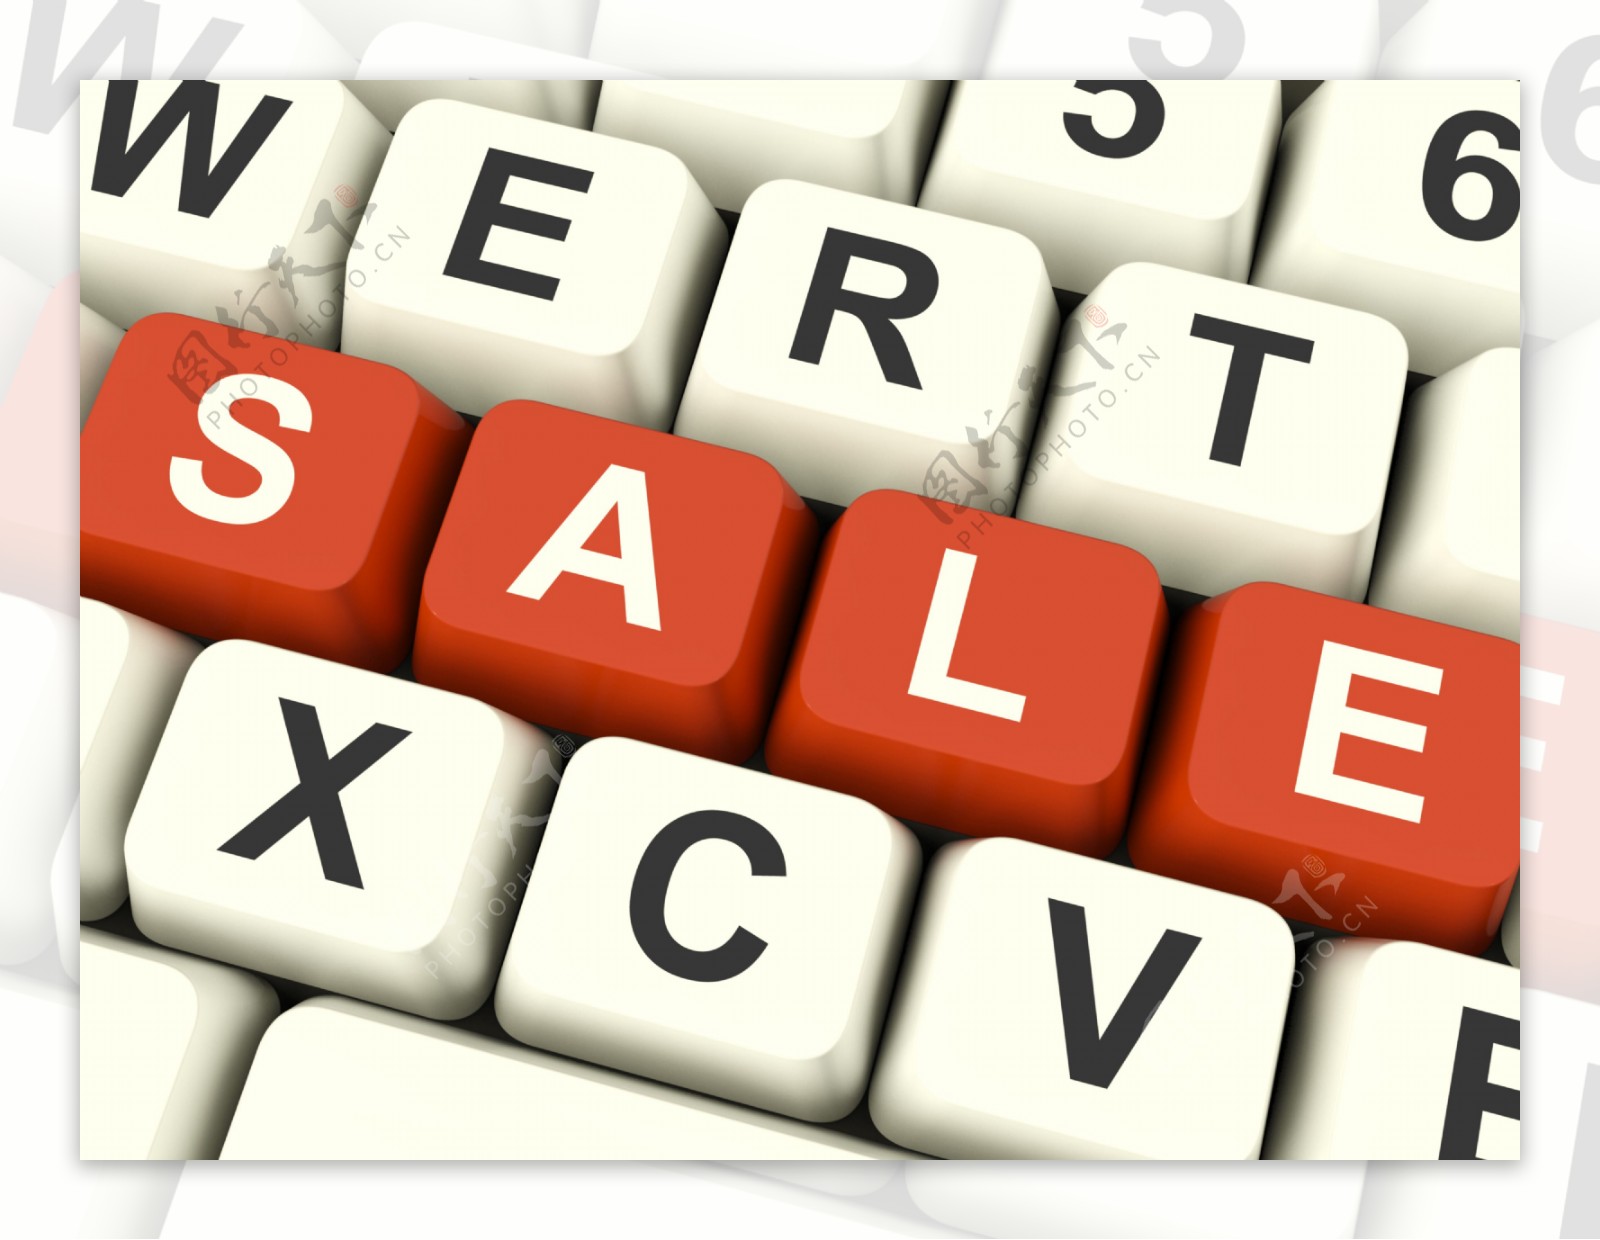 键拼写销售作为折扣和促销活动的象征